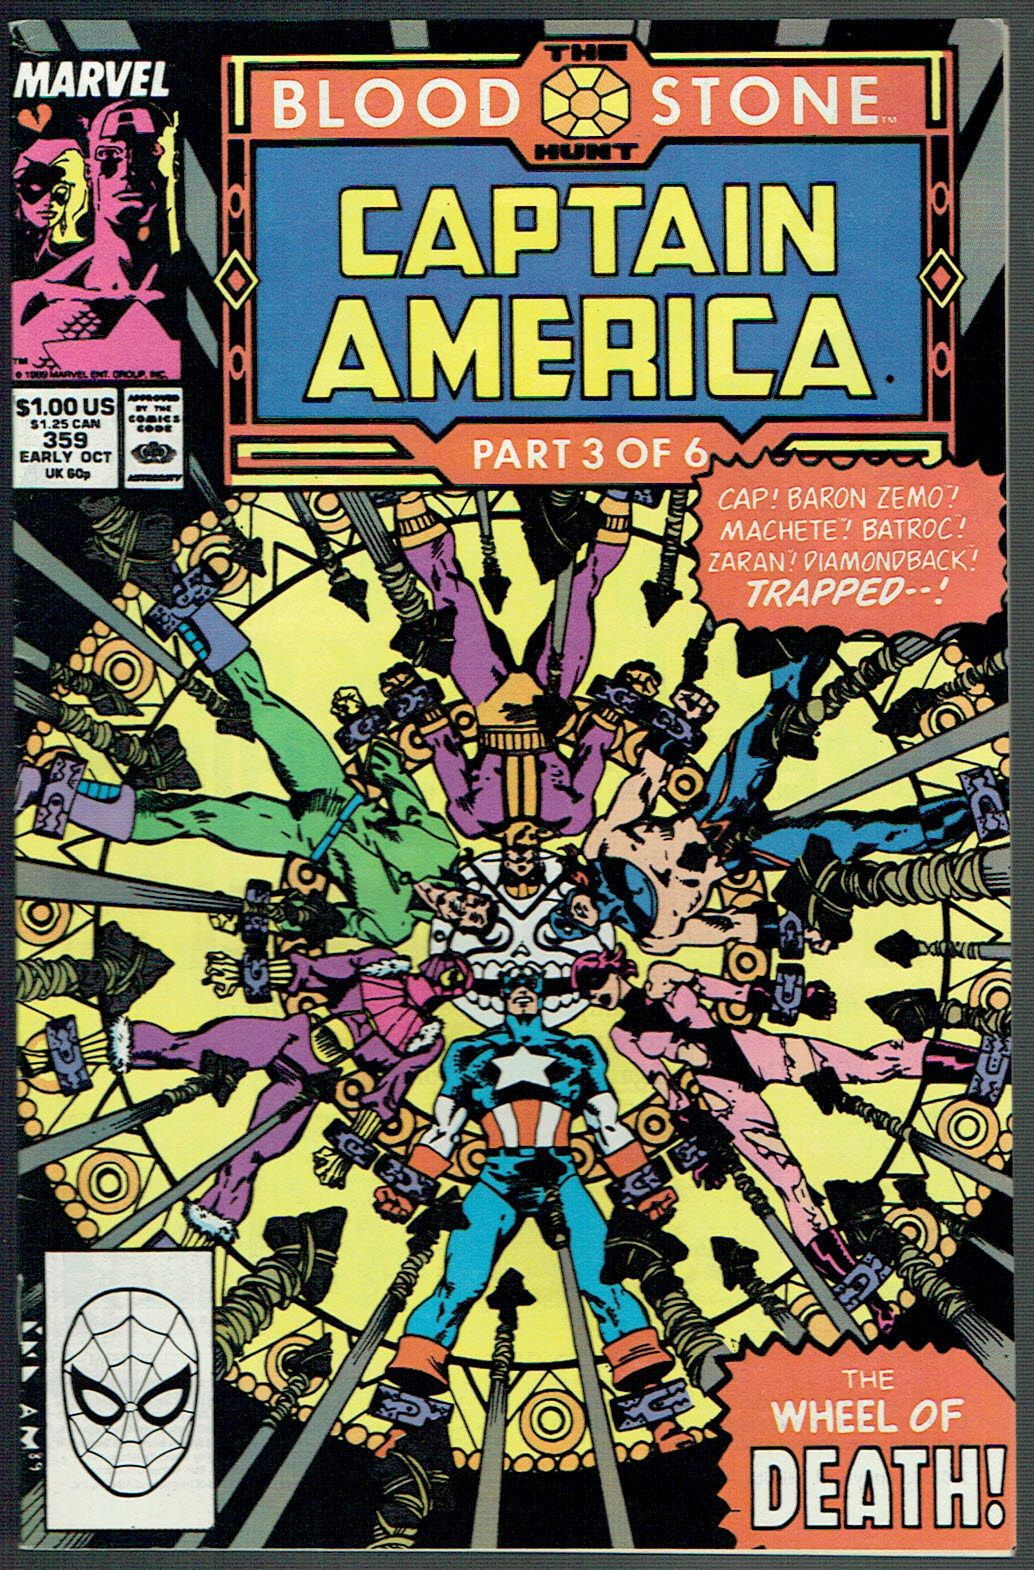 Captain America #359